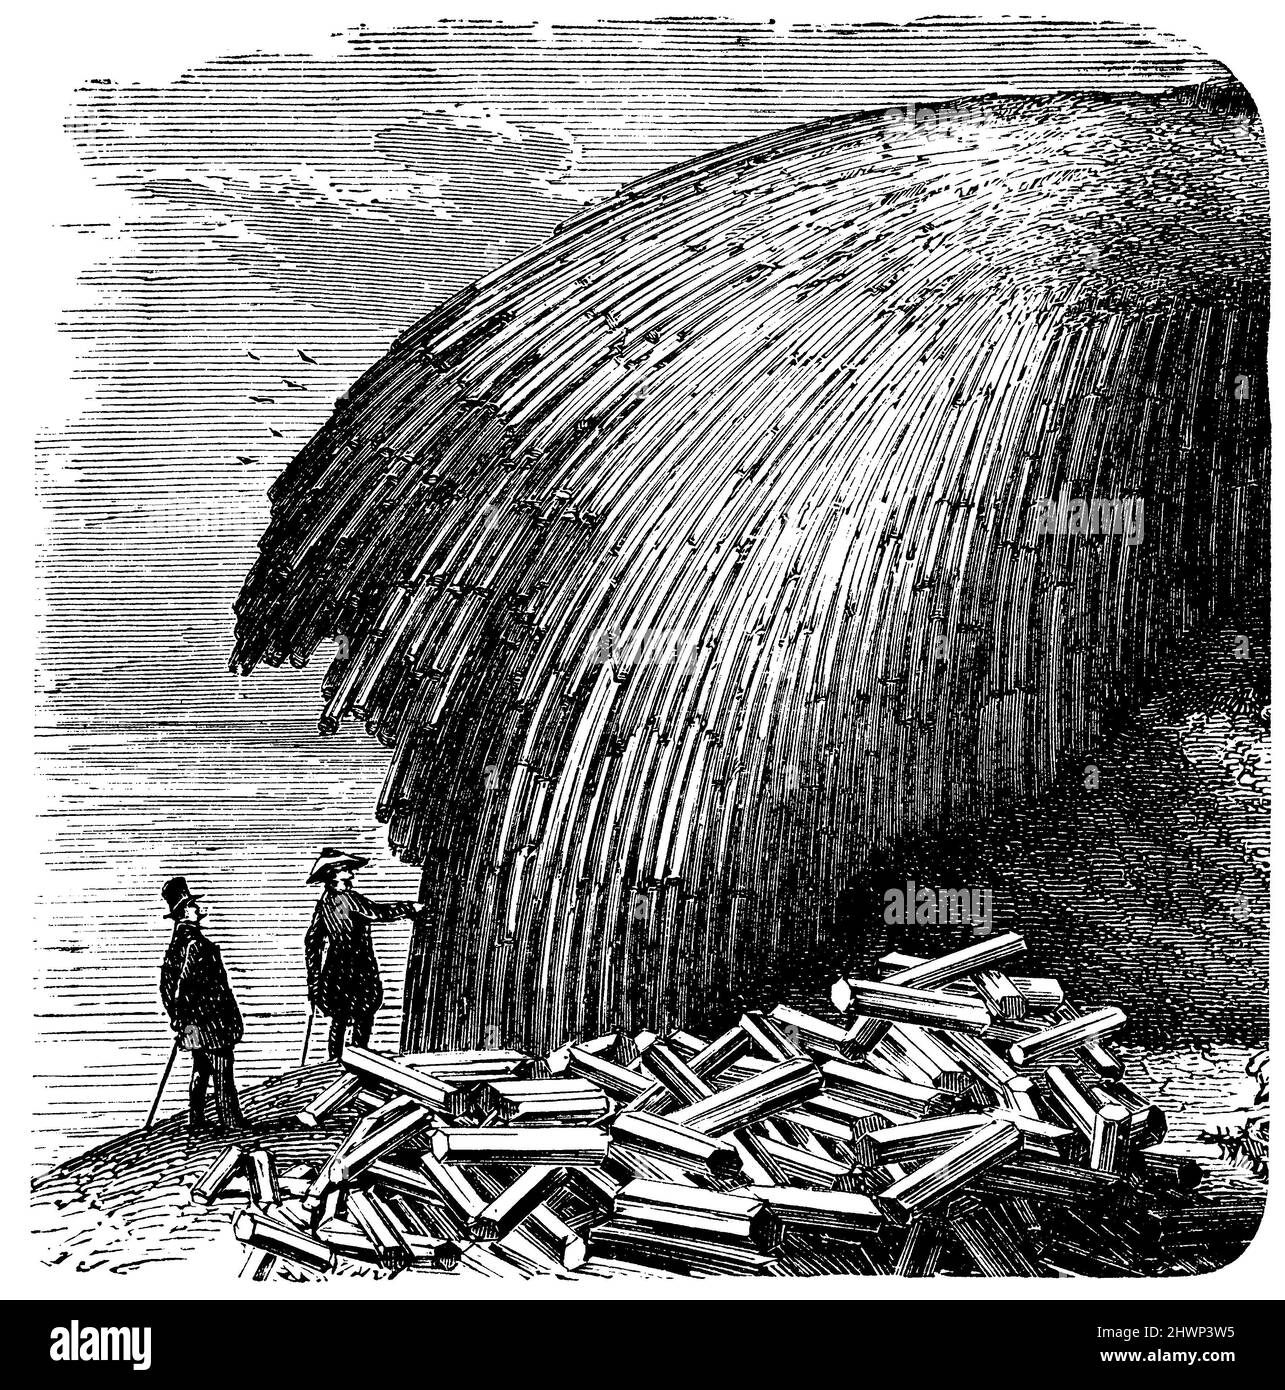 Rochers de basalte incurvés près de Samoskö dans les Carpates, , (encyclopédie, 1893), Gebogene Basaltfelsen BEI Samoskö dans den Karpaten, roches de basalte incurvées près de Samoskö dans les Carpates Banque D'Images